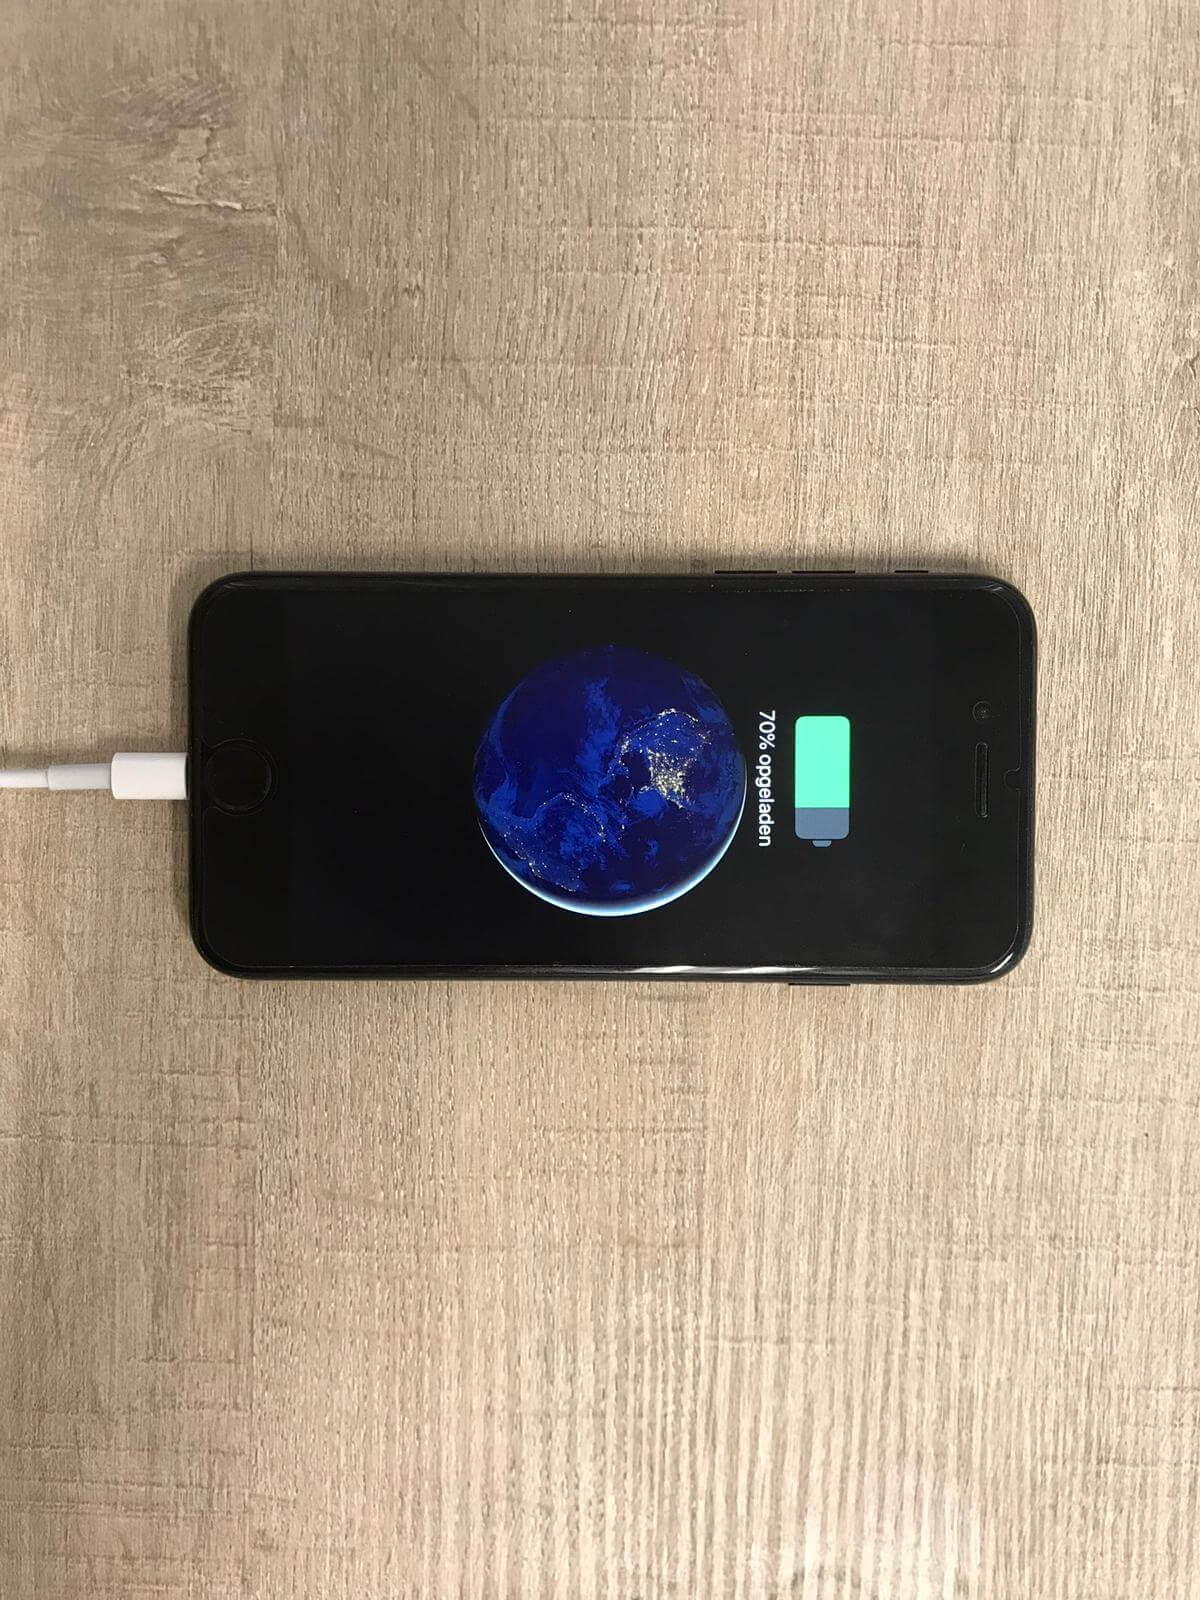 Beurs Abnormaal rommel iPhone batterij bijladen of eerst leeg laten lopen?- Repair IT Now